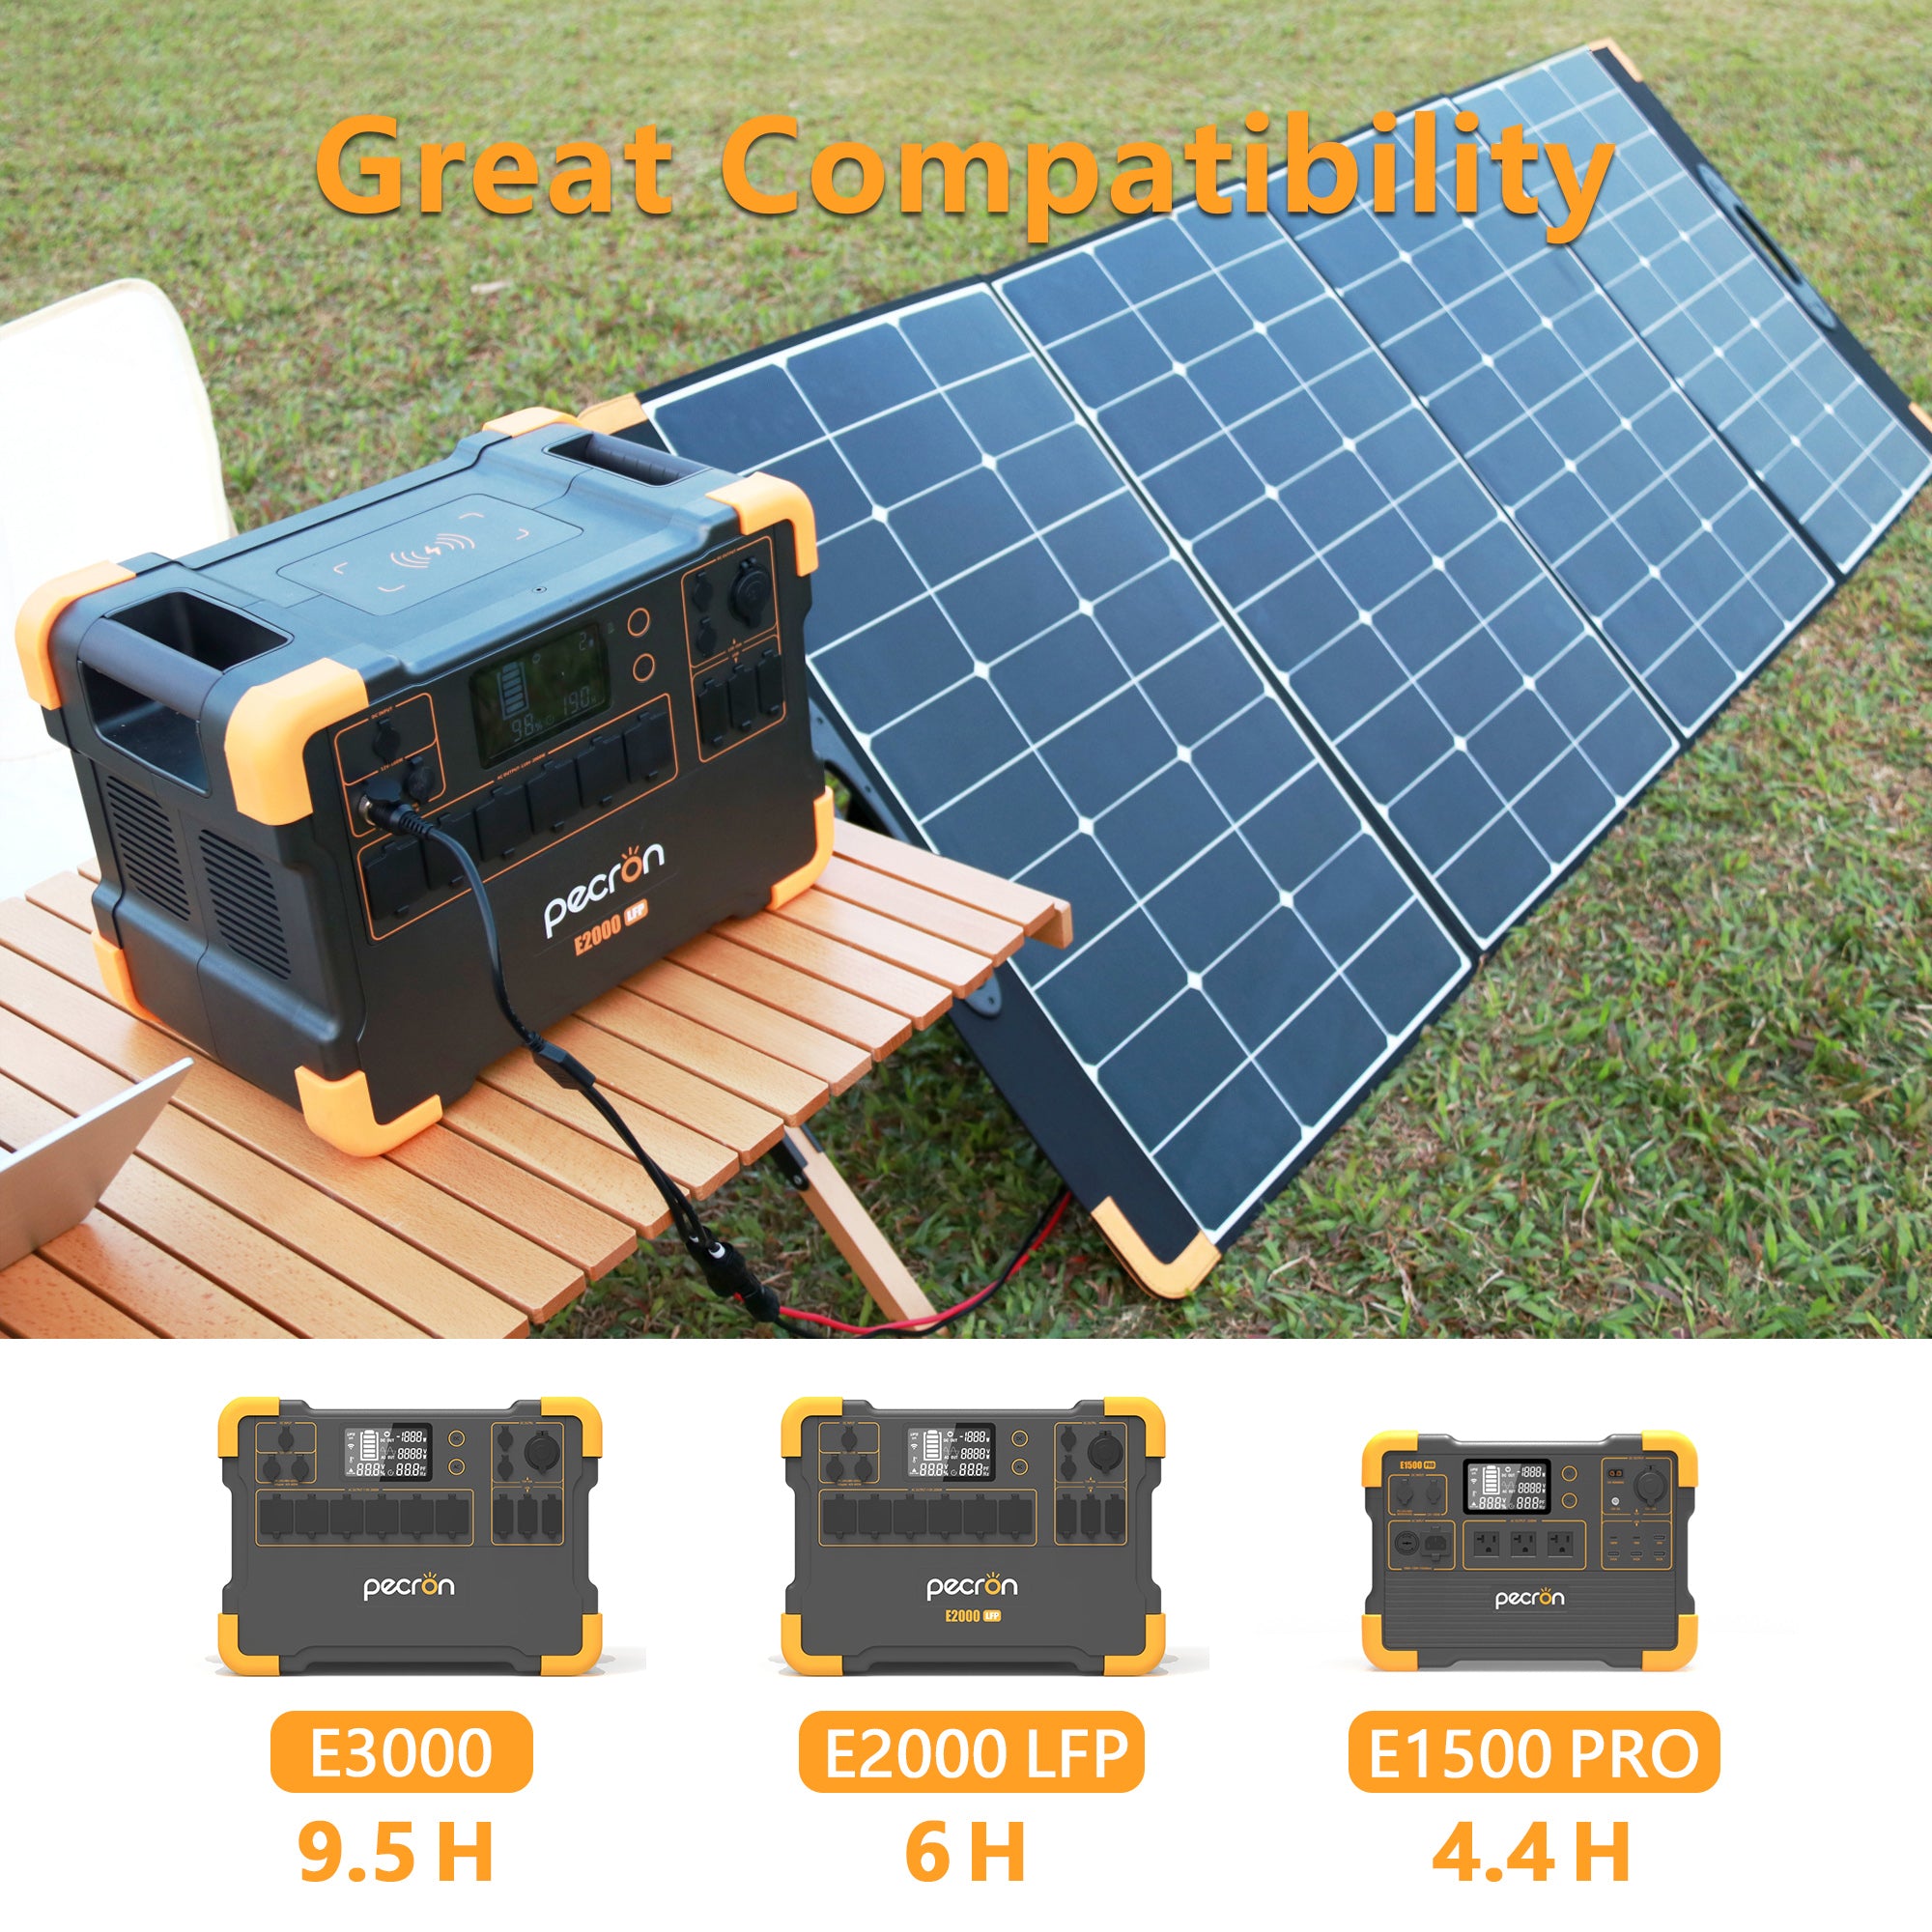 PECRON PV300 330W Portable Solar Panel